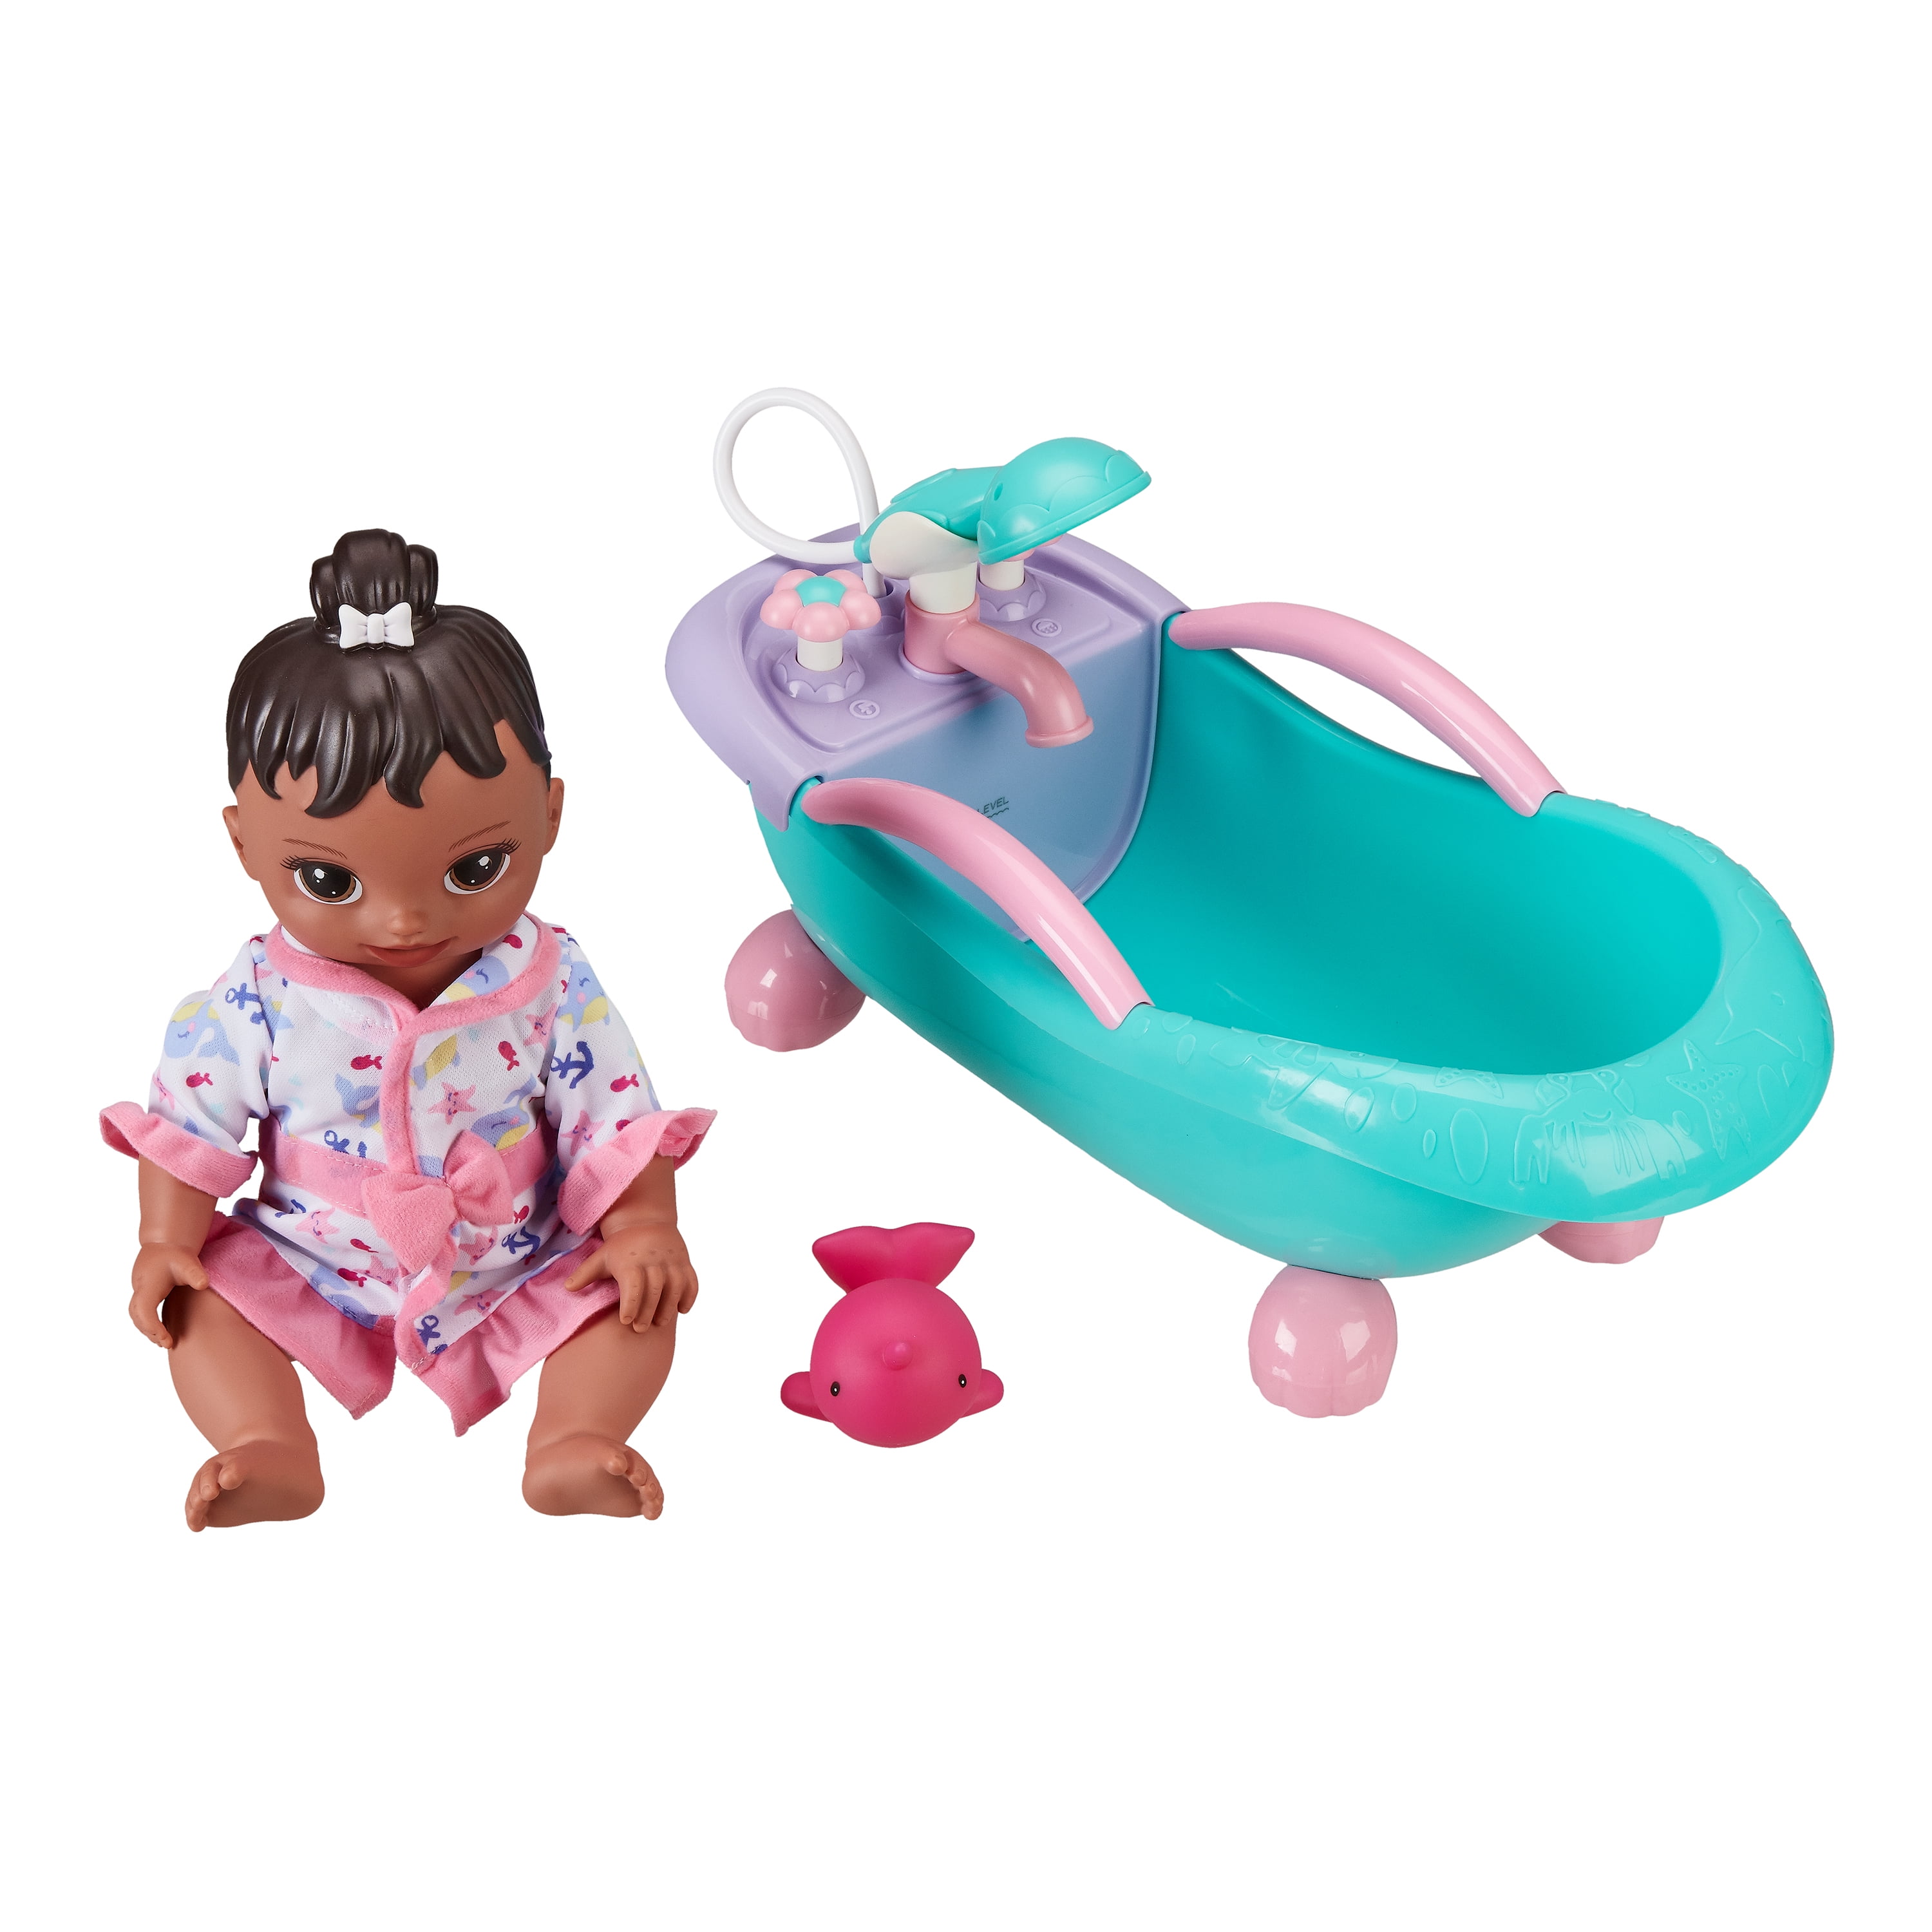 18" Black Ethnic Baby Doll Toy Soft Body Doll Dolls World Bonny Baby 